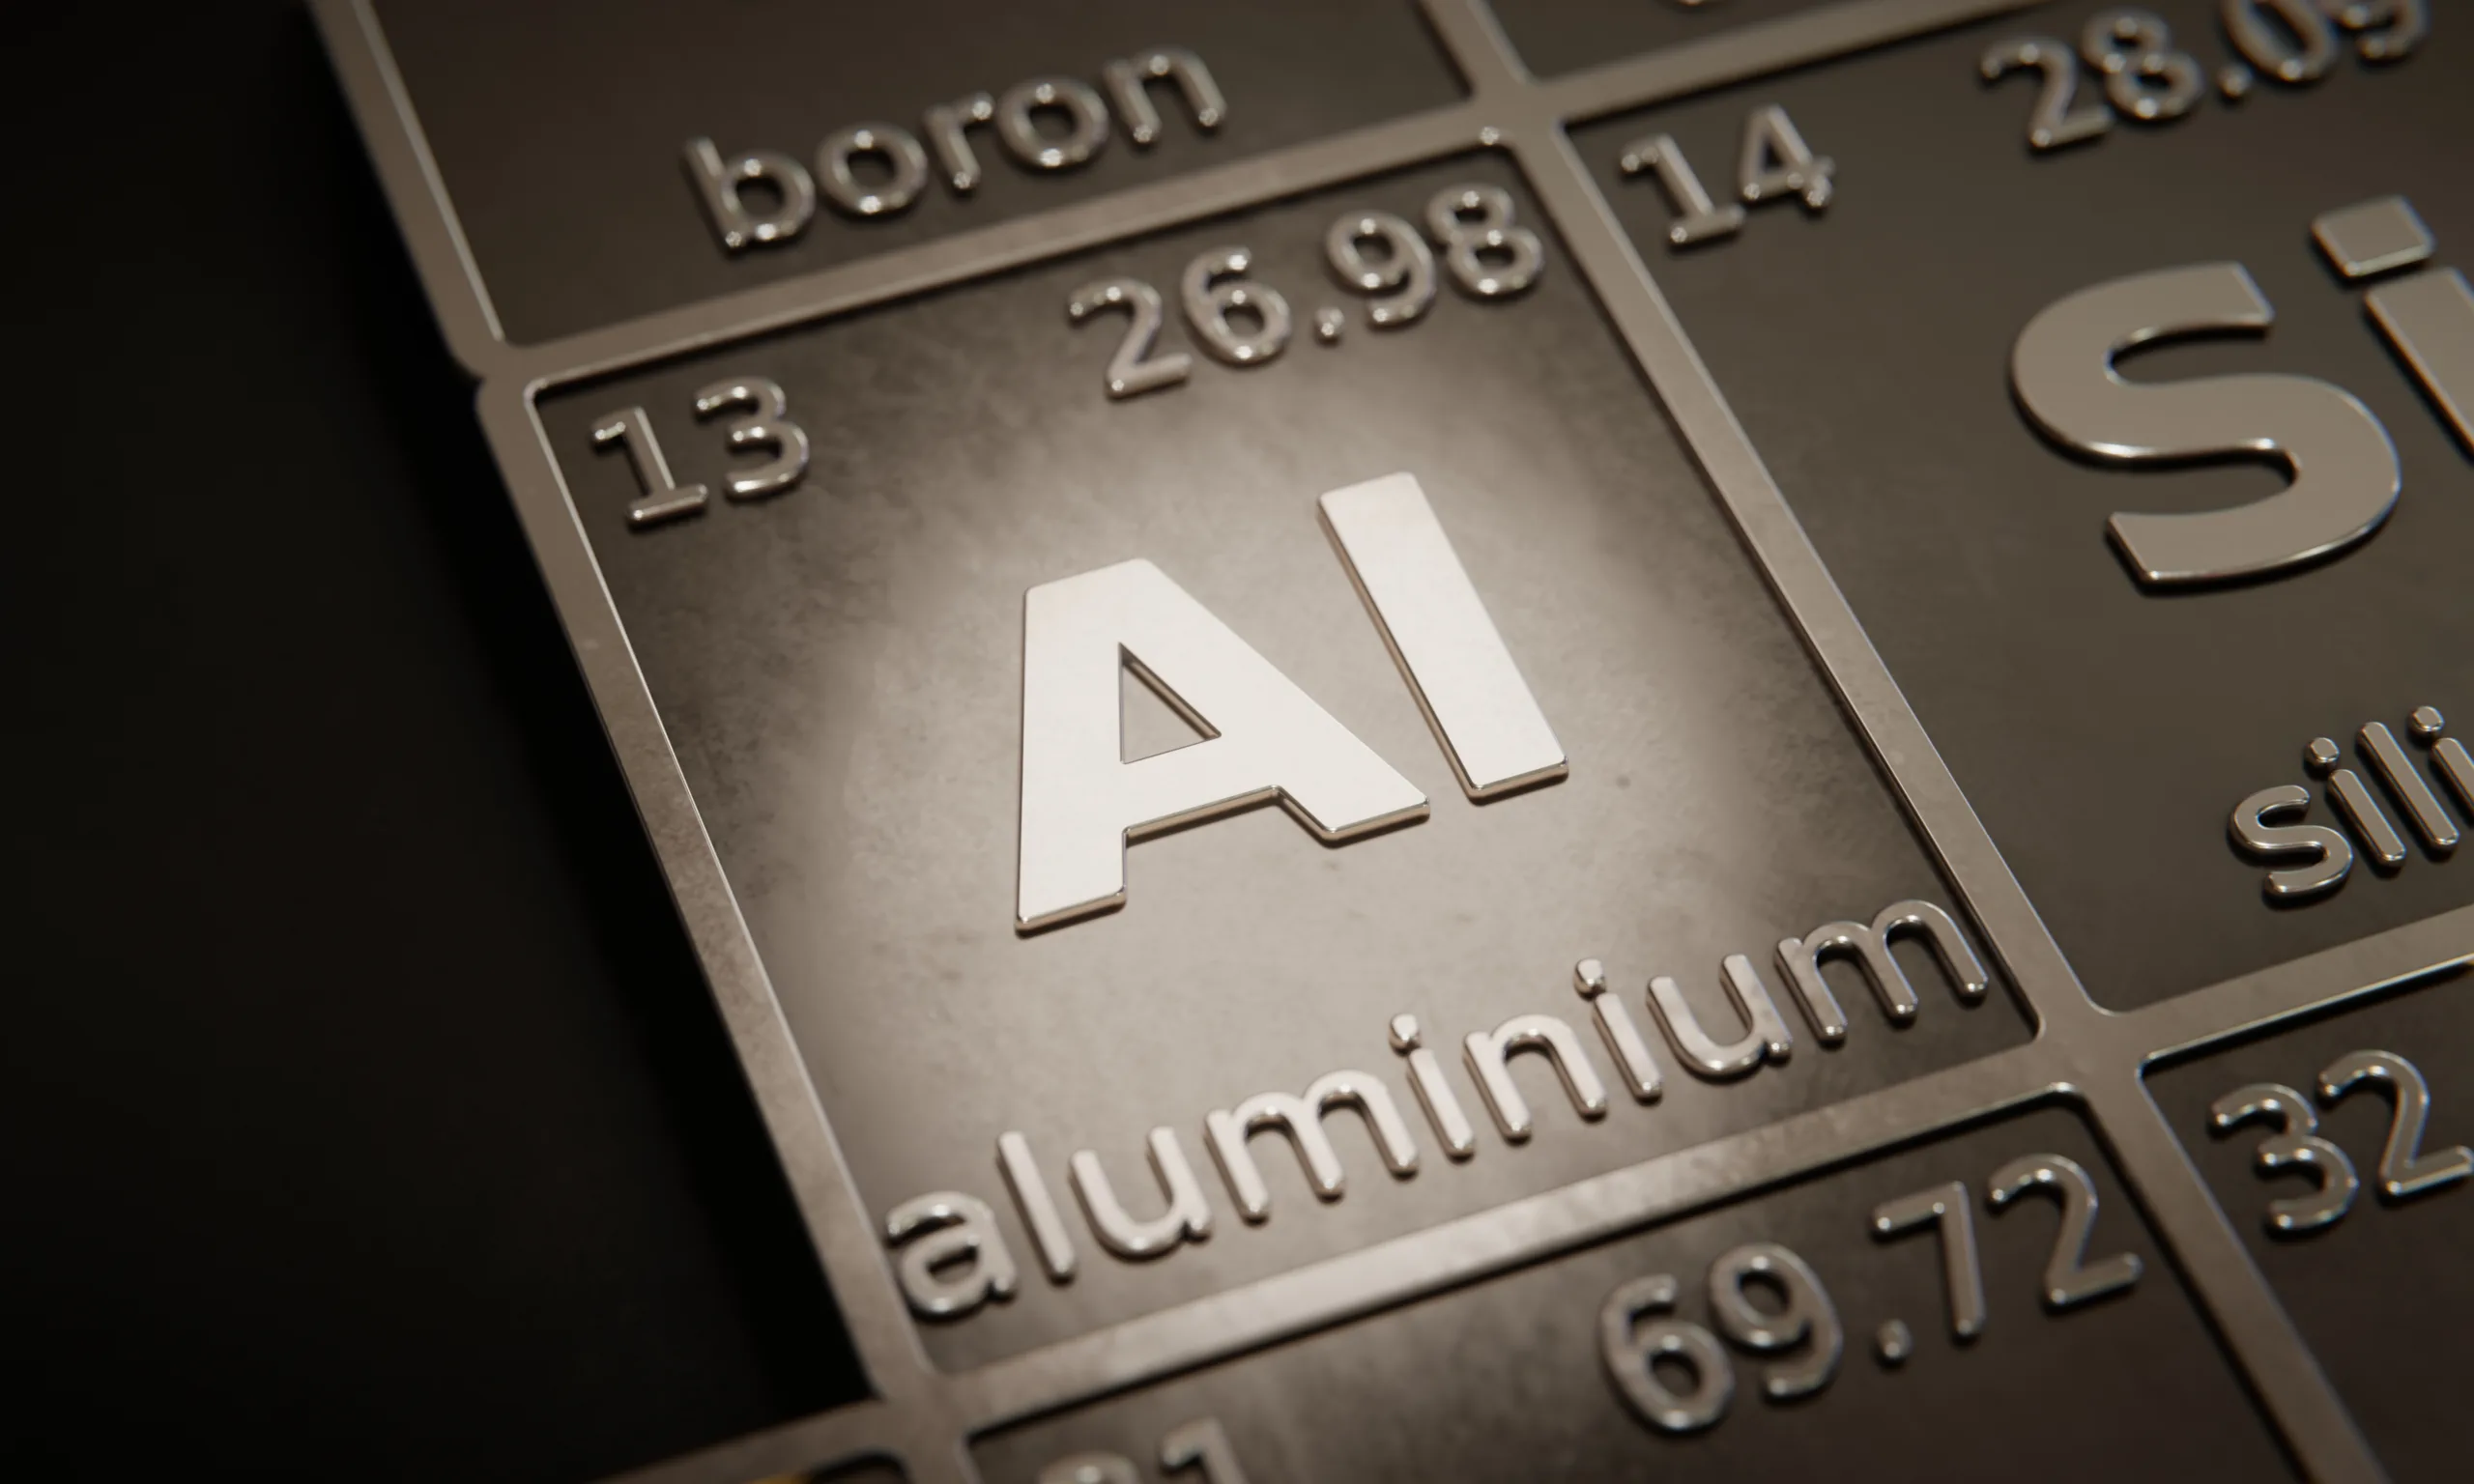 Lumi Stands for Aluminum